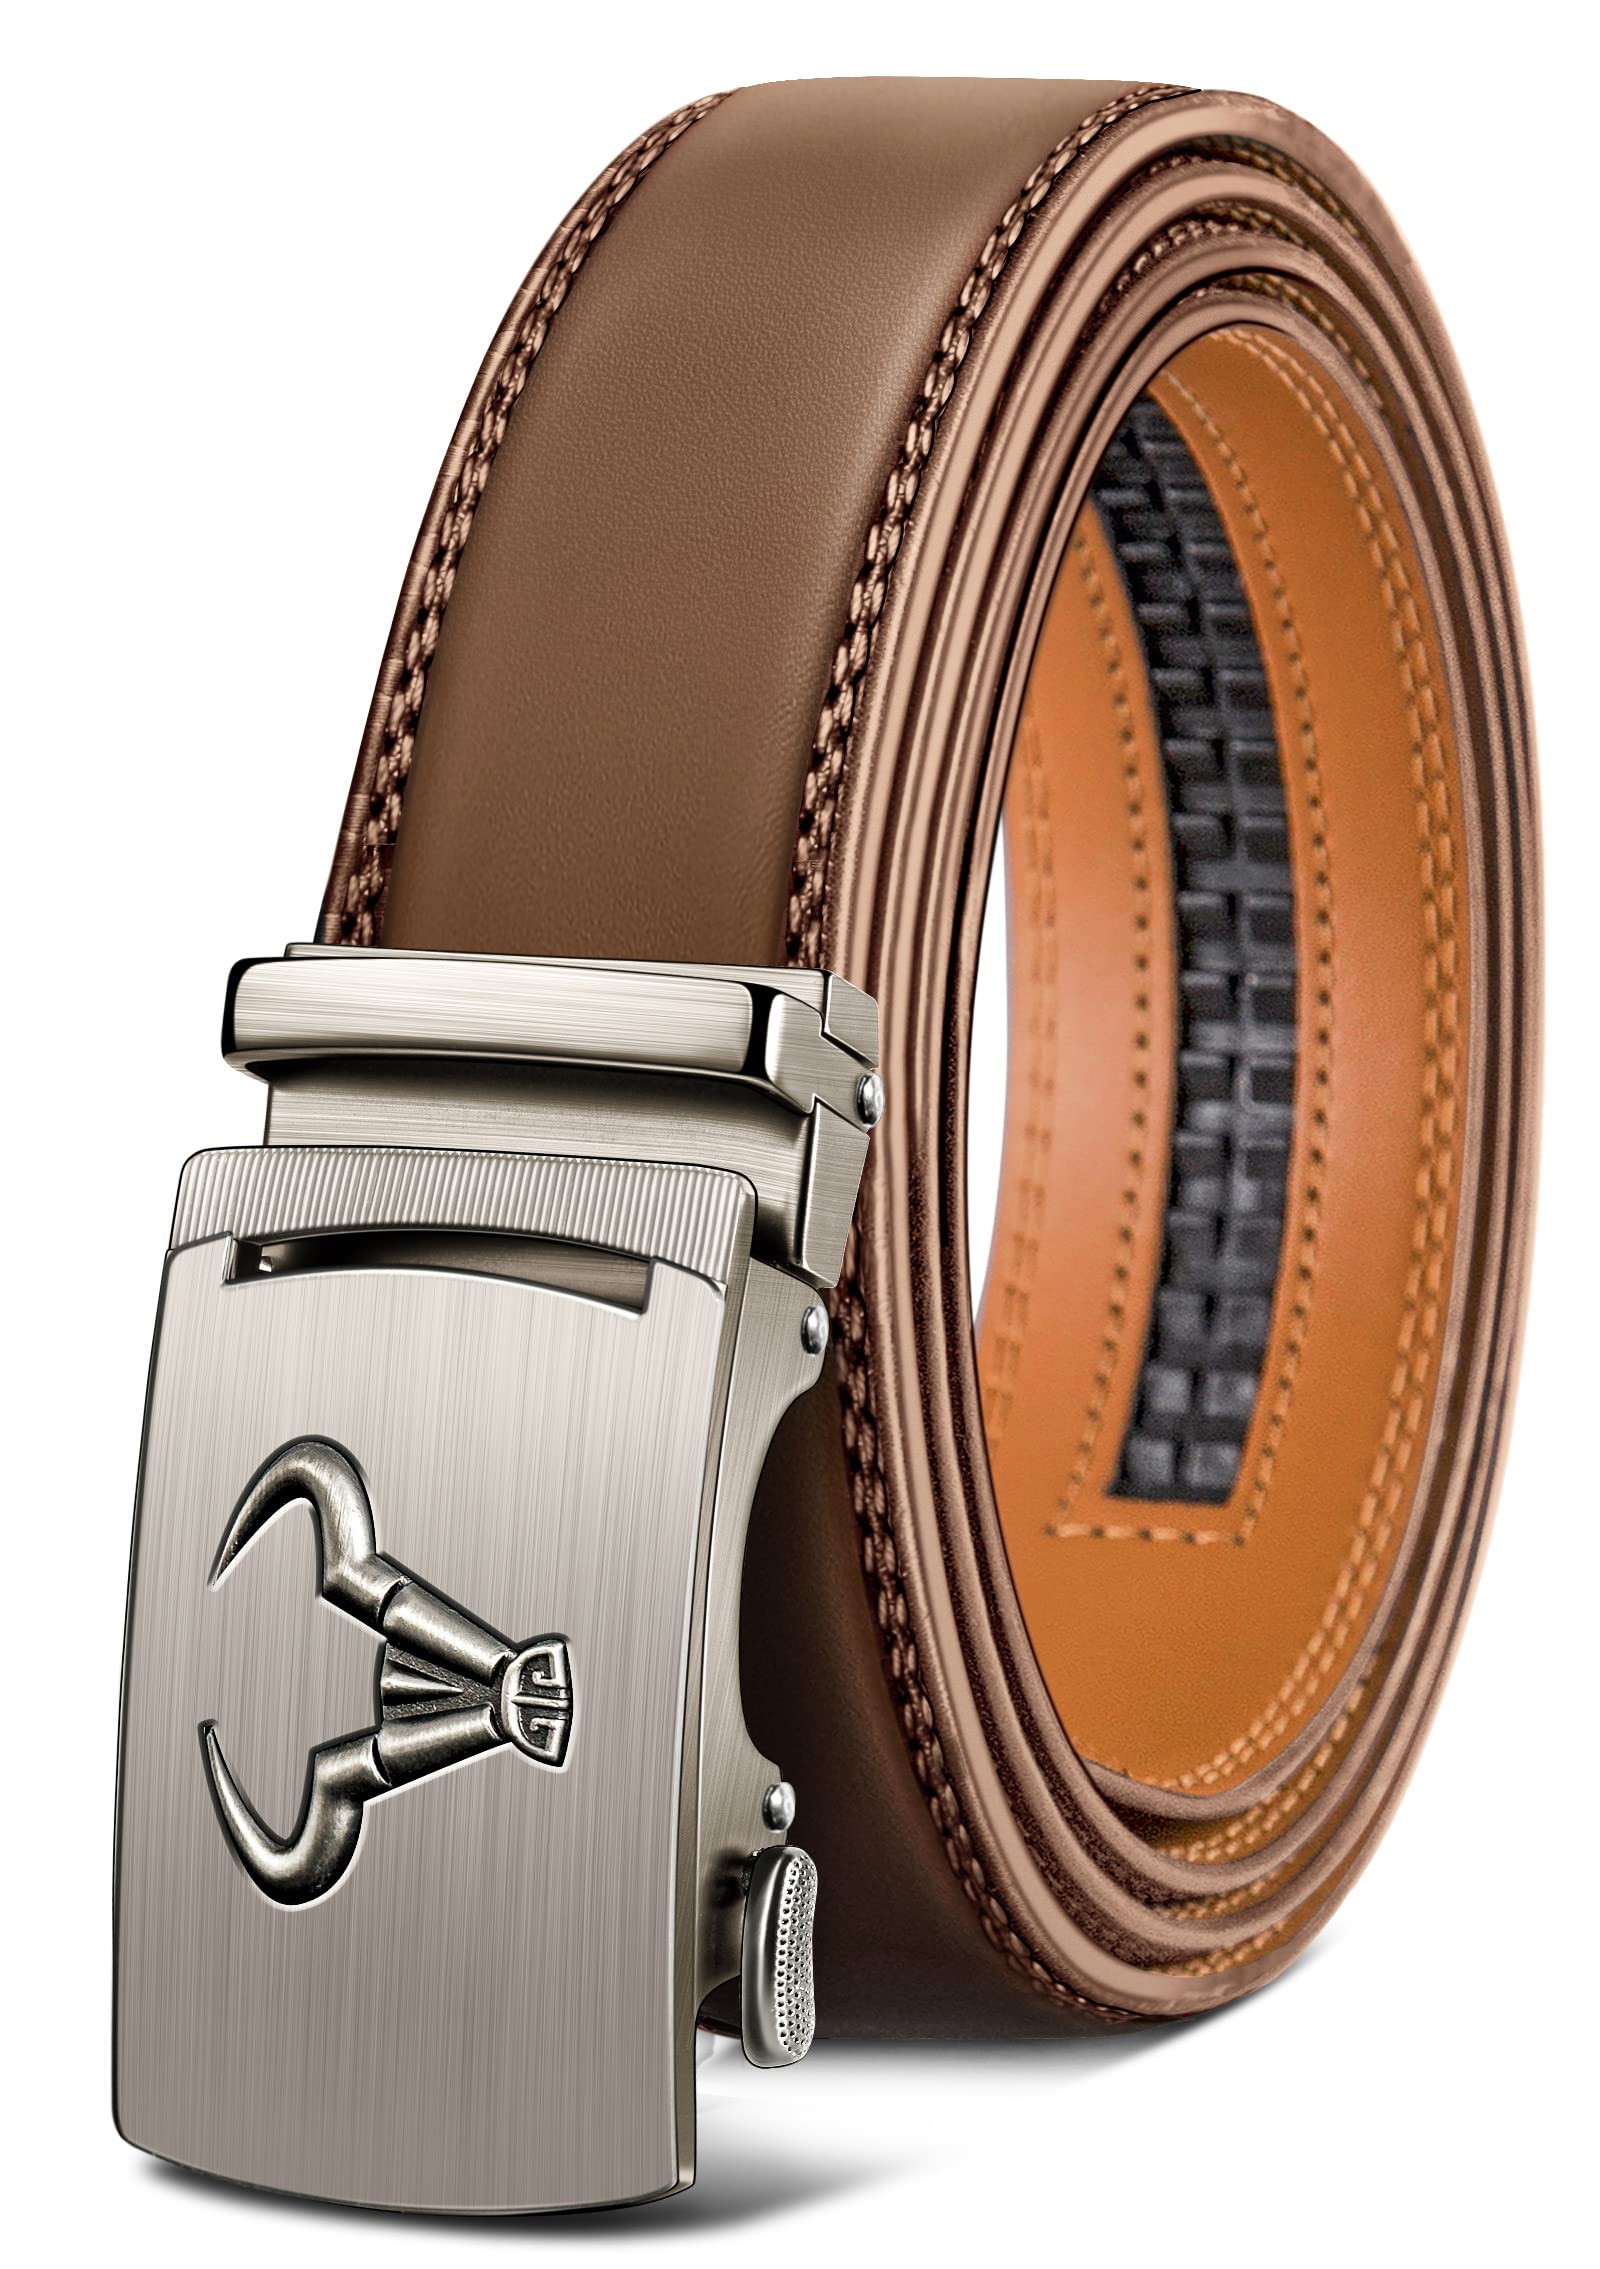 BULLIANT Men's Belt, Brand Ratchet Belt of Genuine Leather for Men Dress,Size Customized